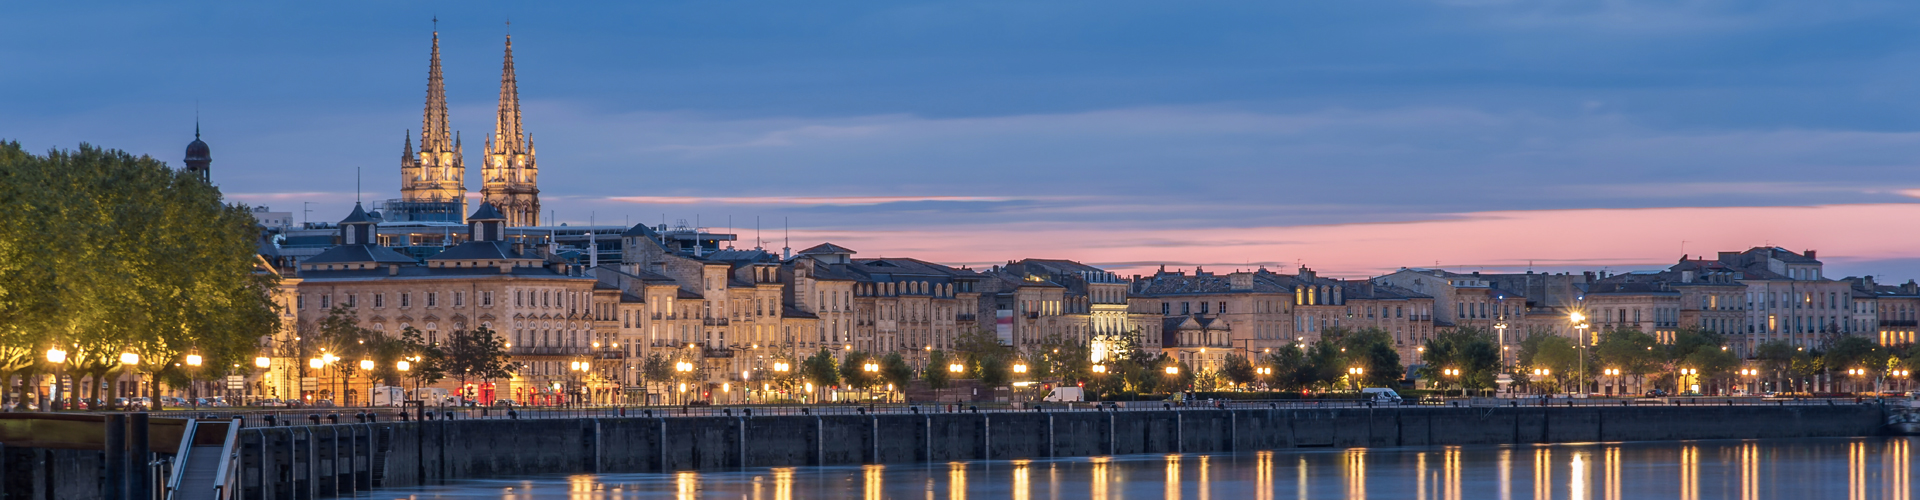 Achat vente de terrains à La Rochelle et Bordeaux